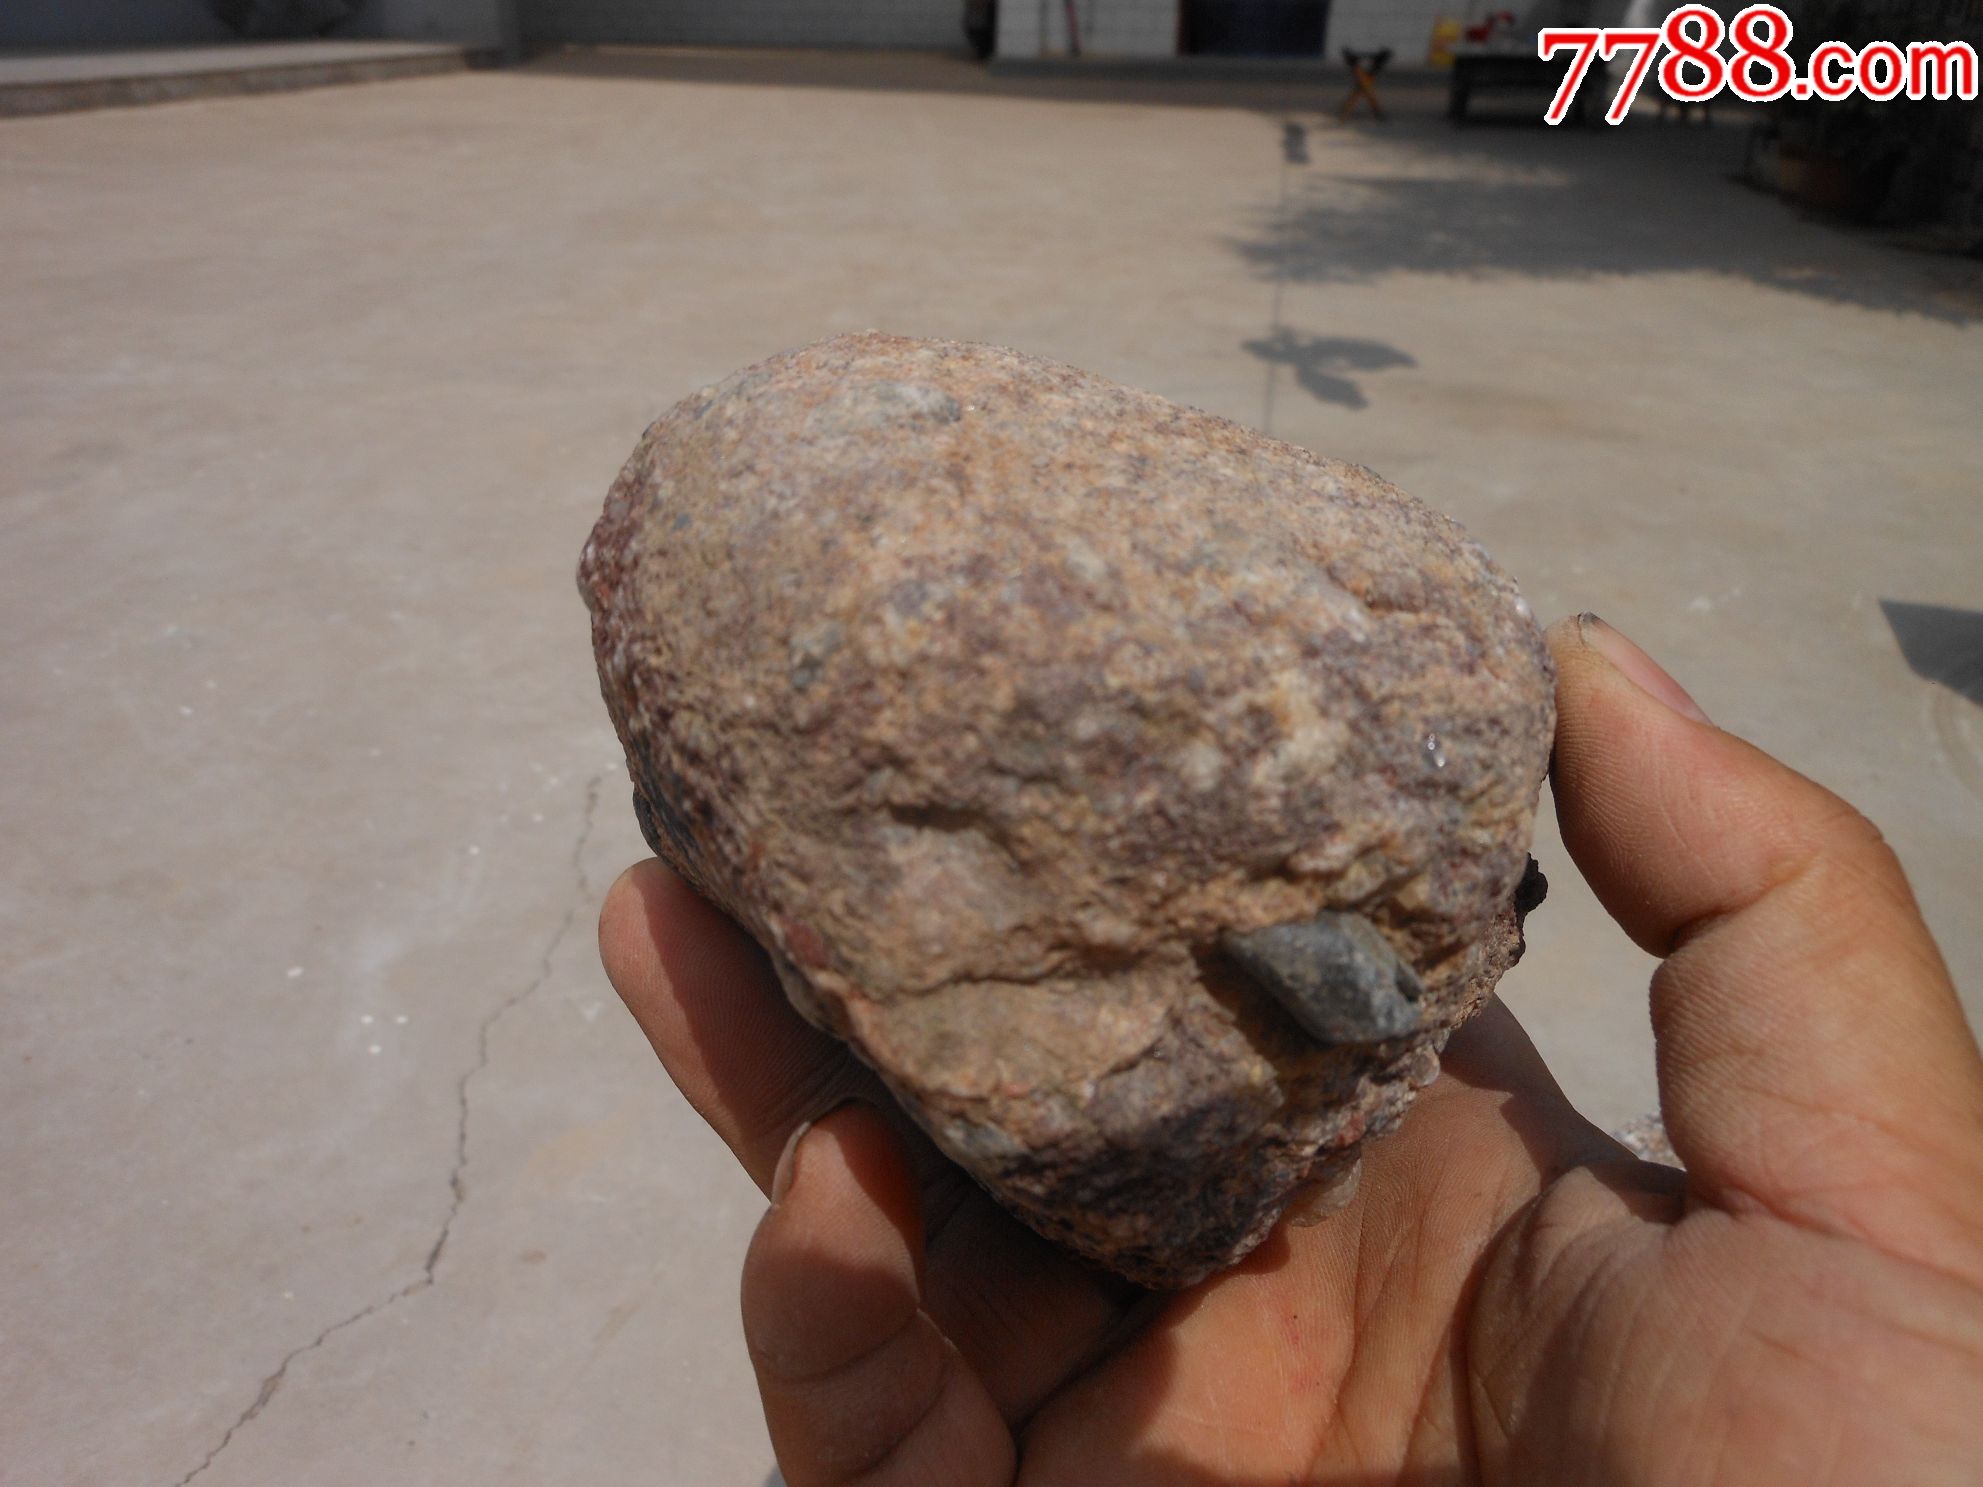 奇石;天然原石摆件石包石观赏石12厘米*9厘米*7厘米重约1250克